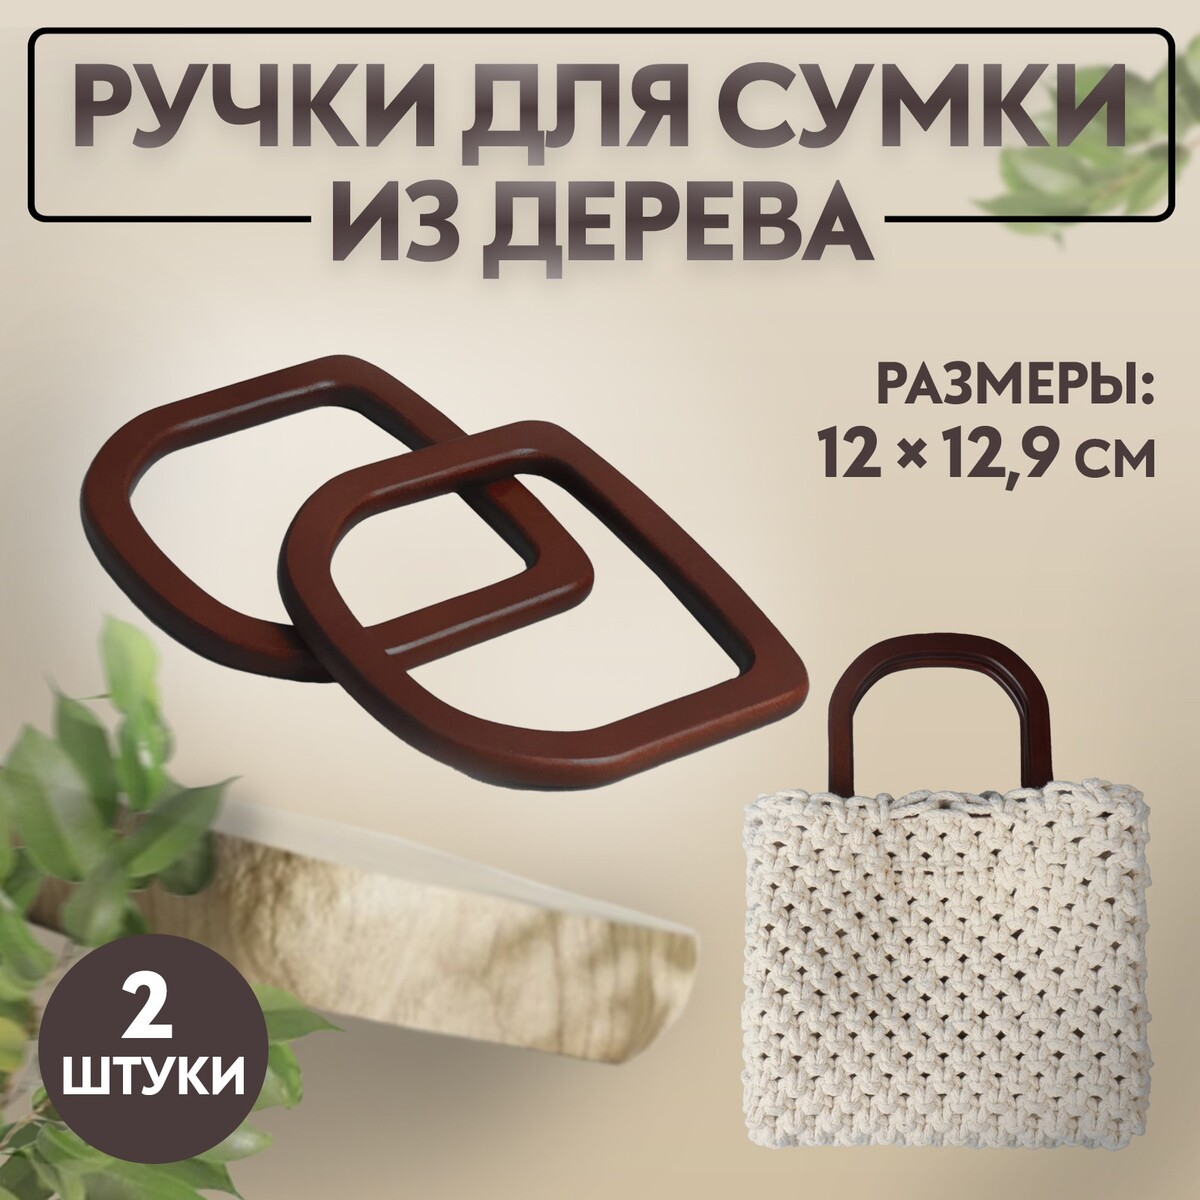 Ручки для сумки деревянные, 12 × 12,9 см, 2 шт, цвет коричневый ручки для сумки деревянные плетеные d 10 2 12 5 см 2 шт коричневый